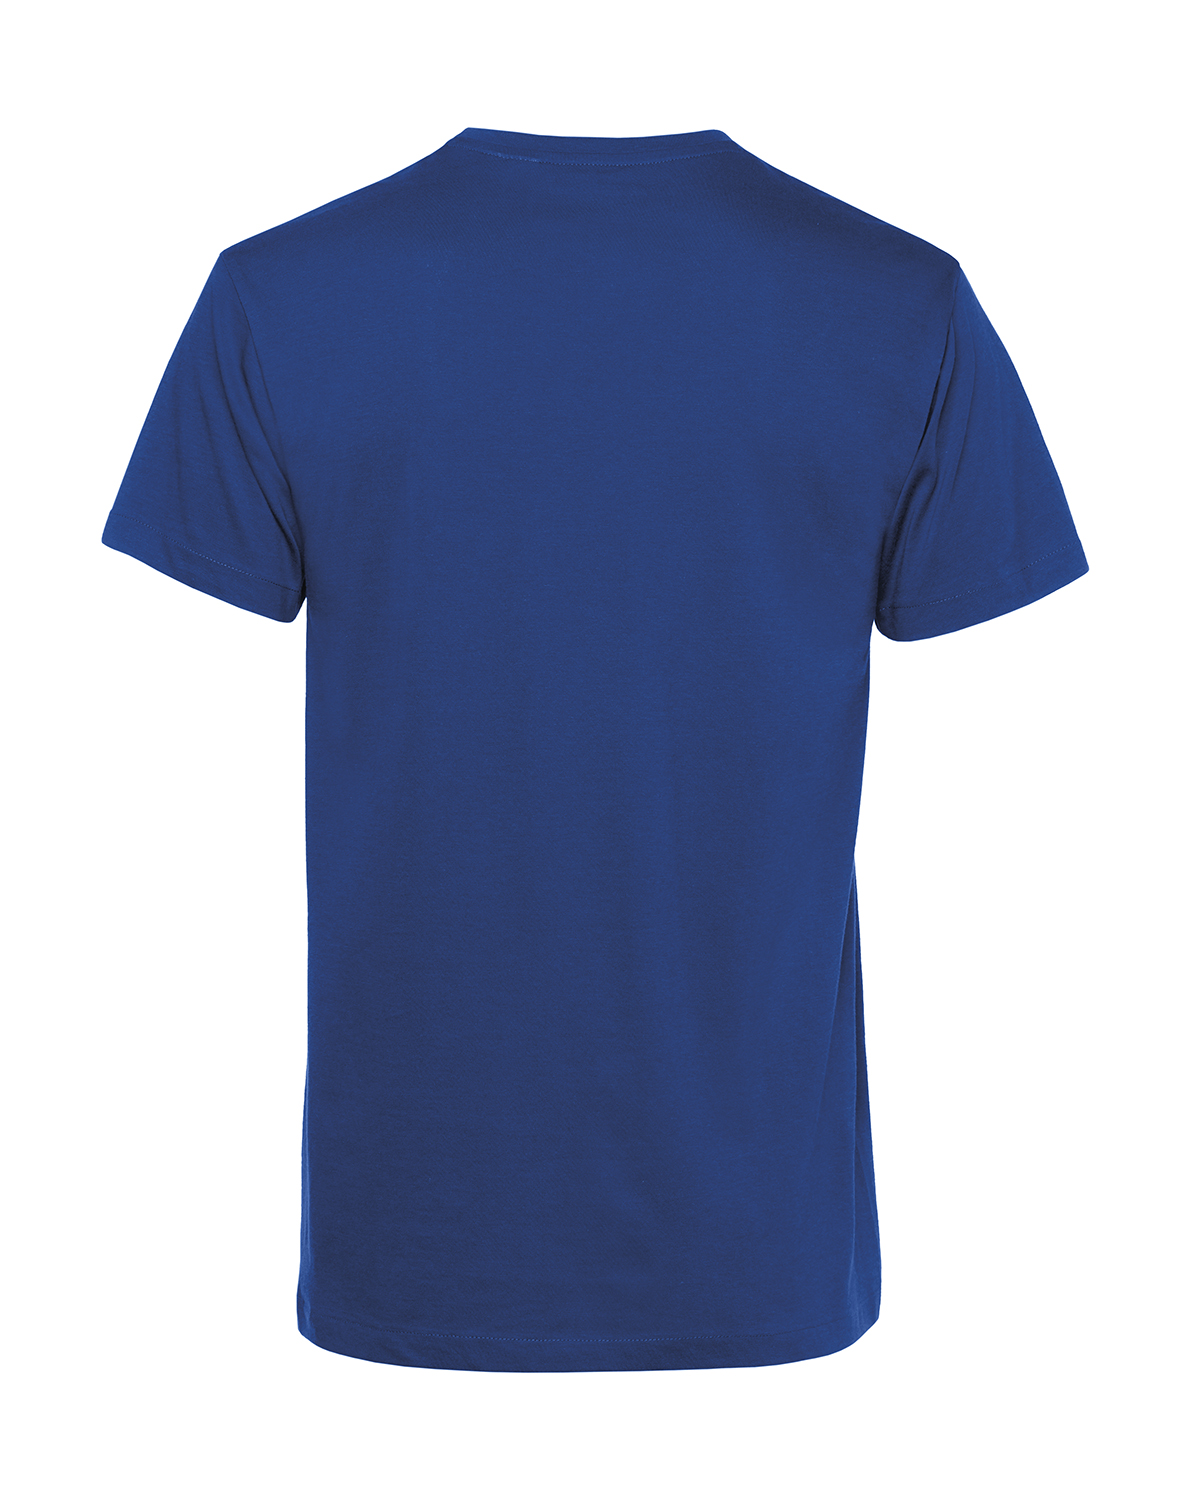 Nachhaltiges T-Shirt Herren 2Takter - Halo I bims 1 KR51-Fahrer